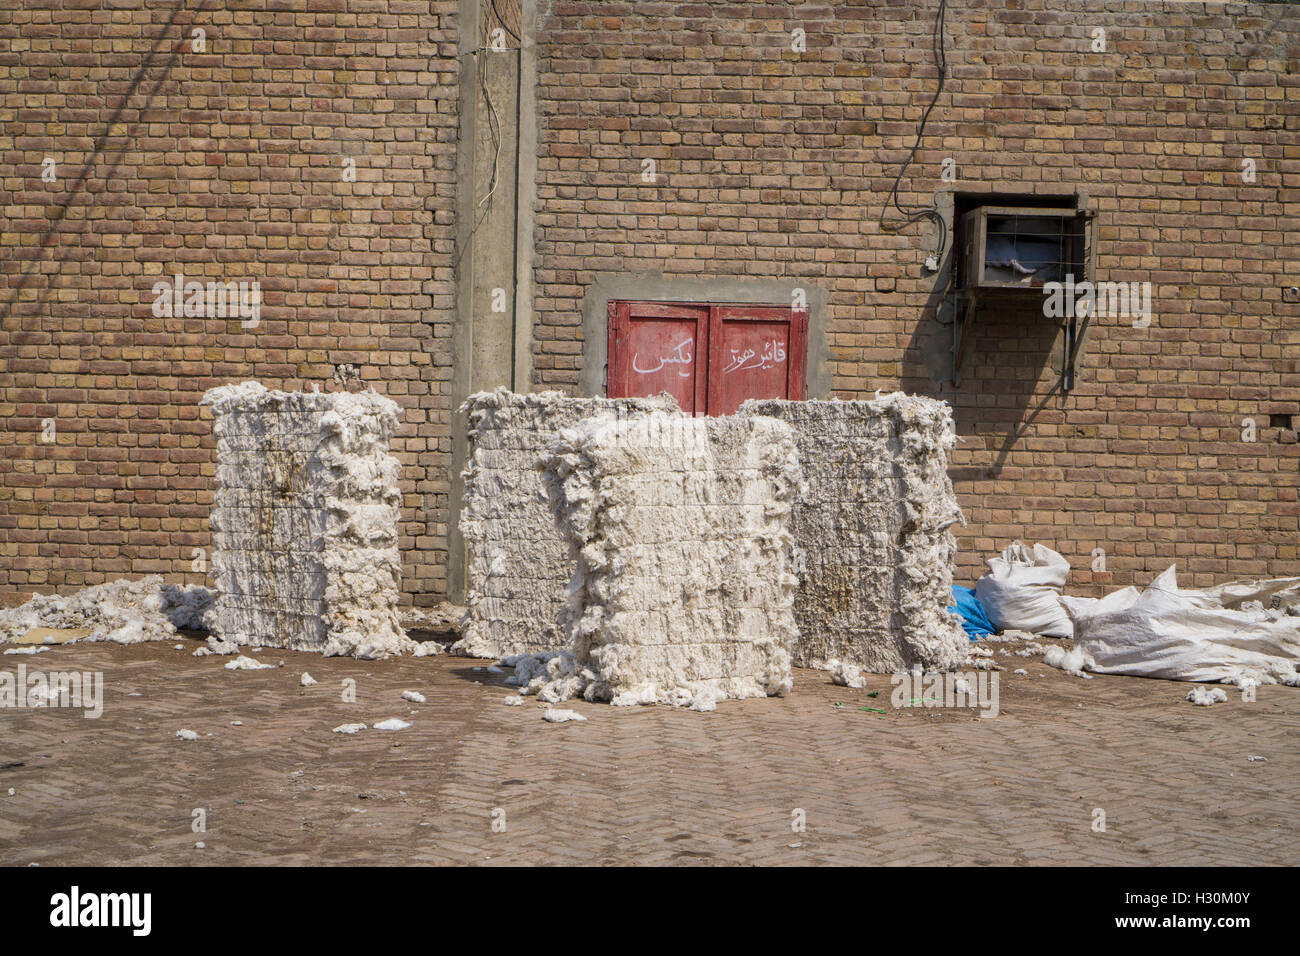 Raw cotton , cotton mill Multan Pakistan Stock Photo